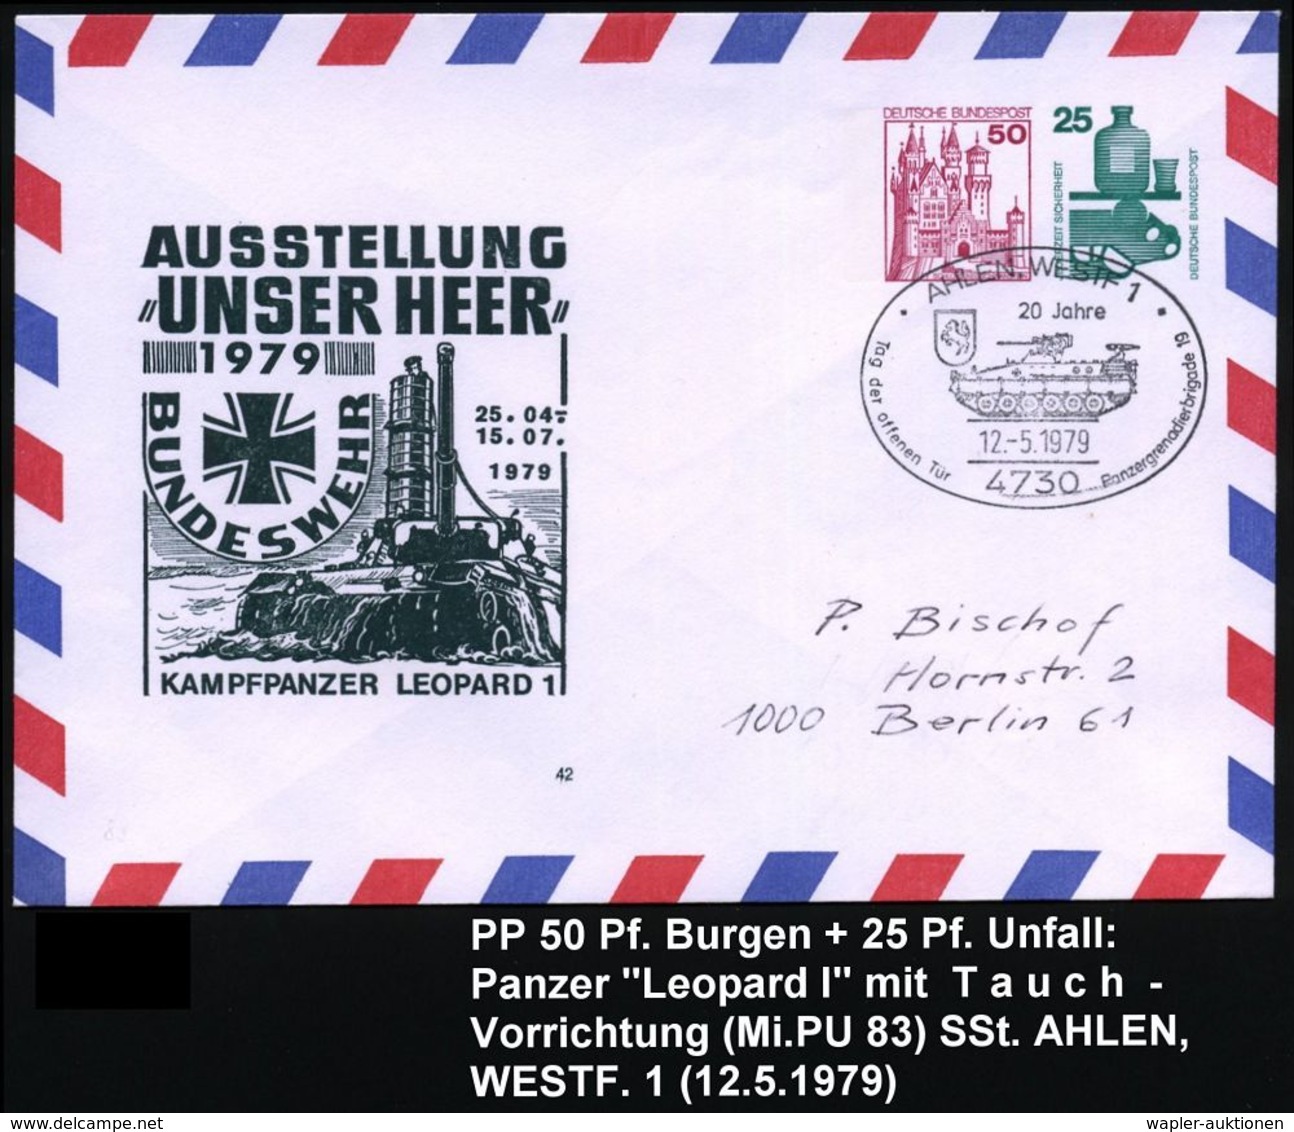 GEPANZERTE KRAFTFAHRZEUGE / PANZER : 4730 AALEN,WESTF 1/ 20 Jahre/ ..Panzergrenadierbrigade 19 1979 (12.5.) SSt = Sch.-P - Autres (Terre)